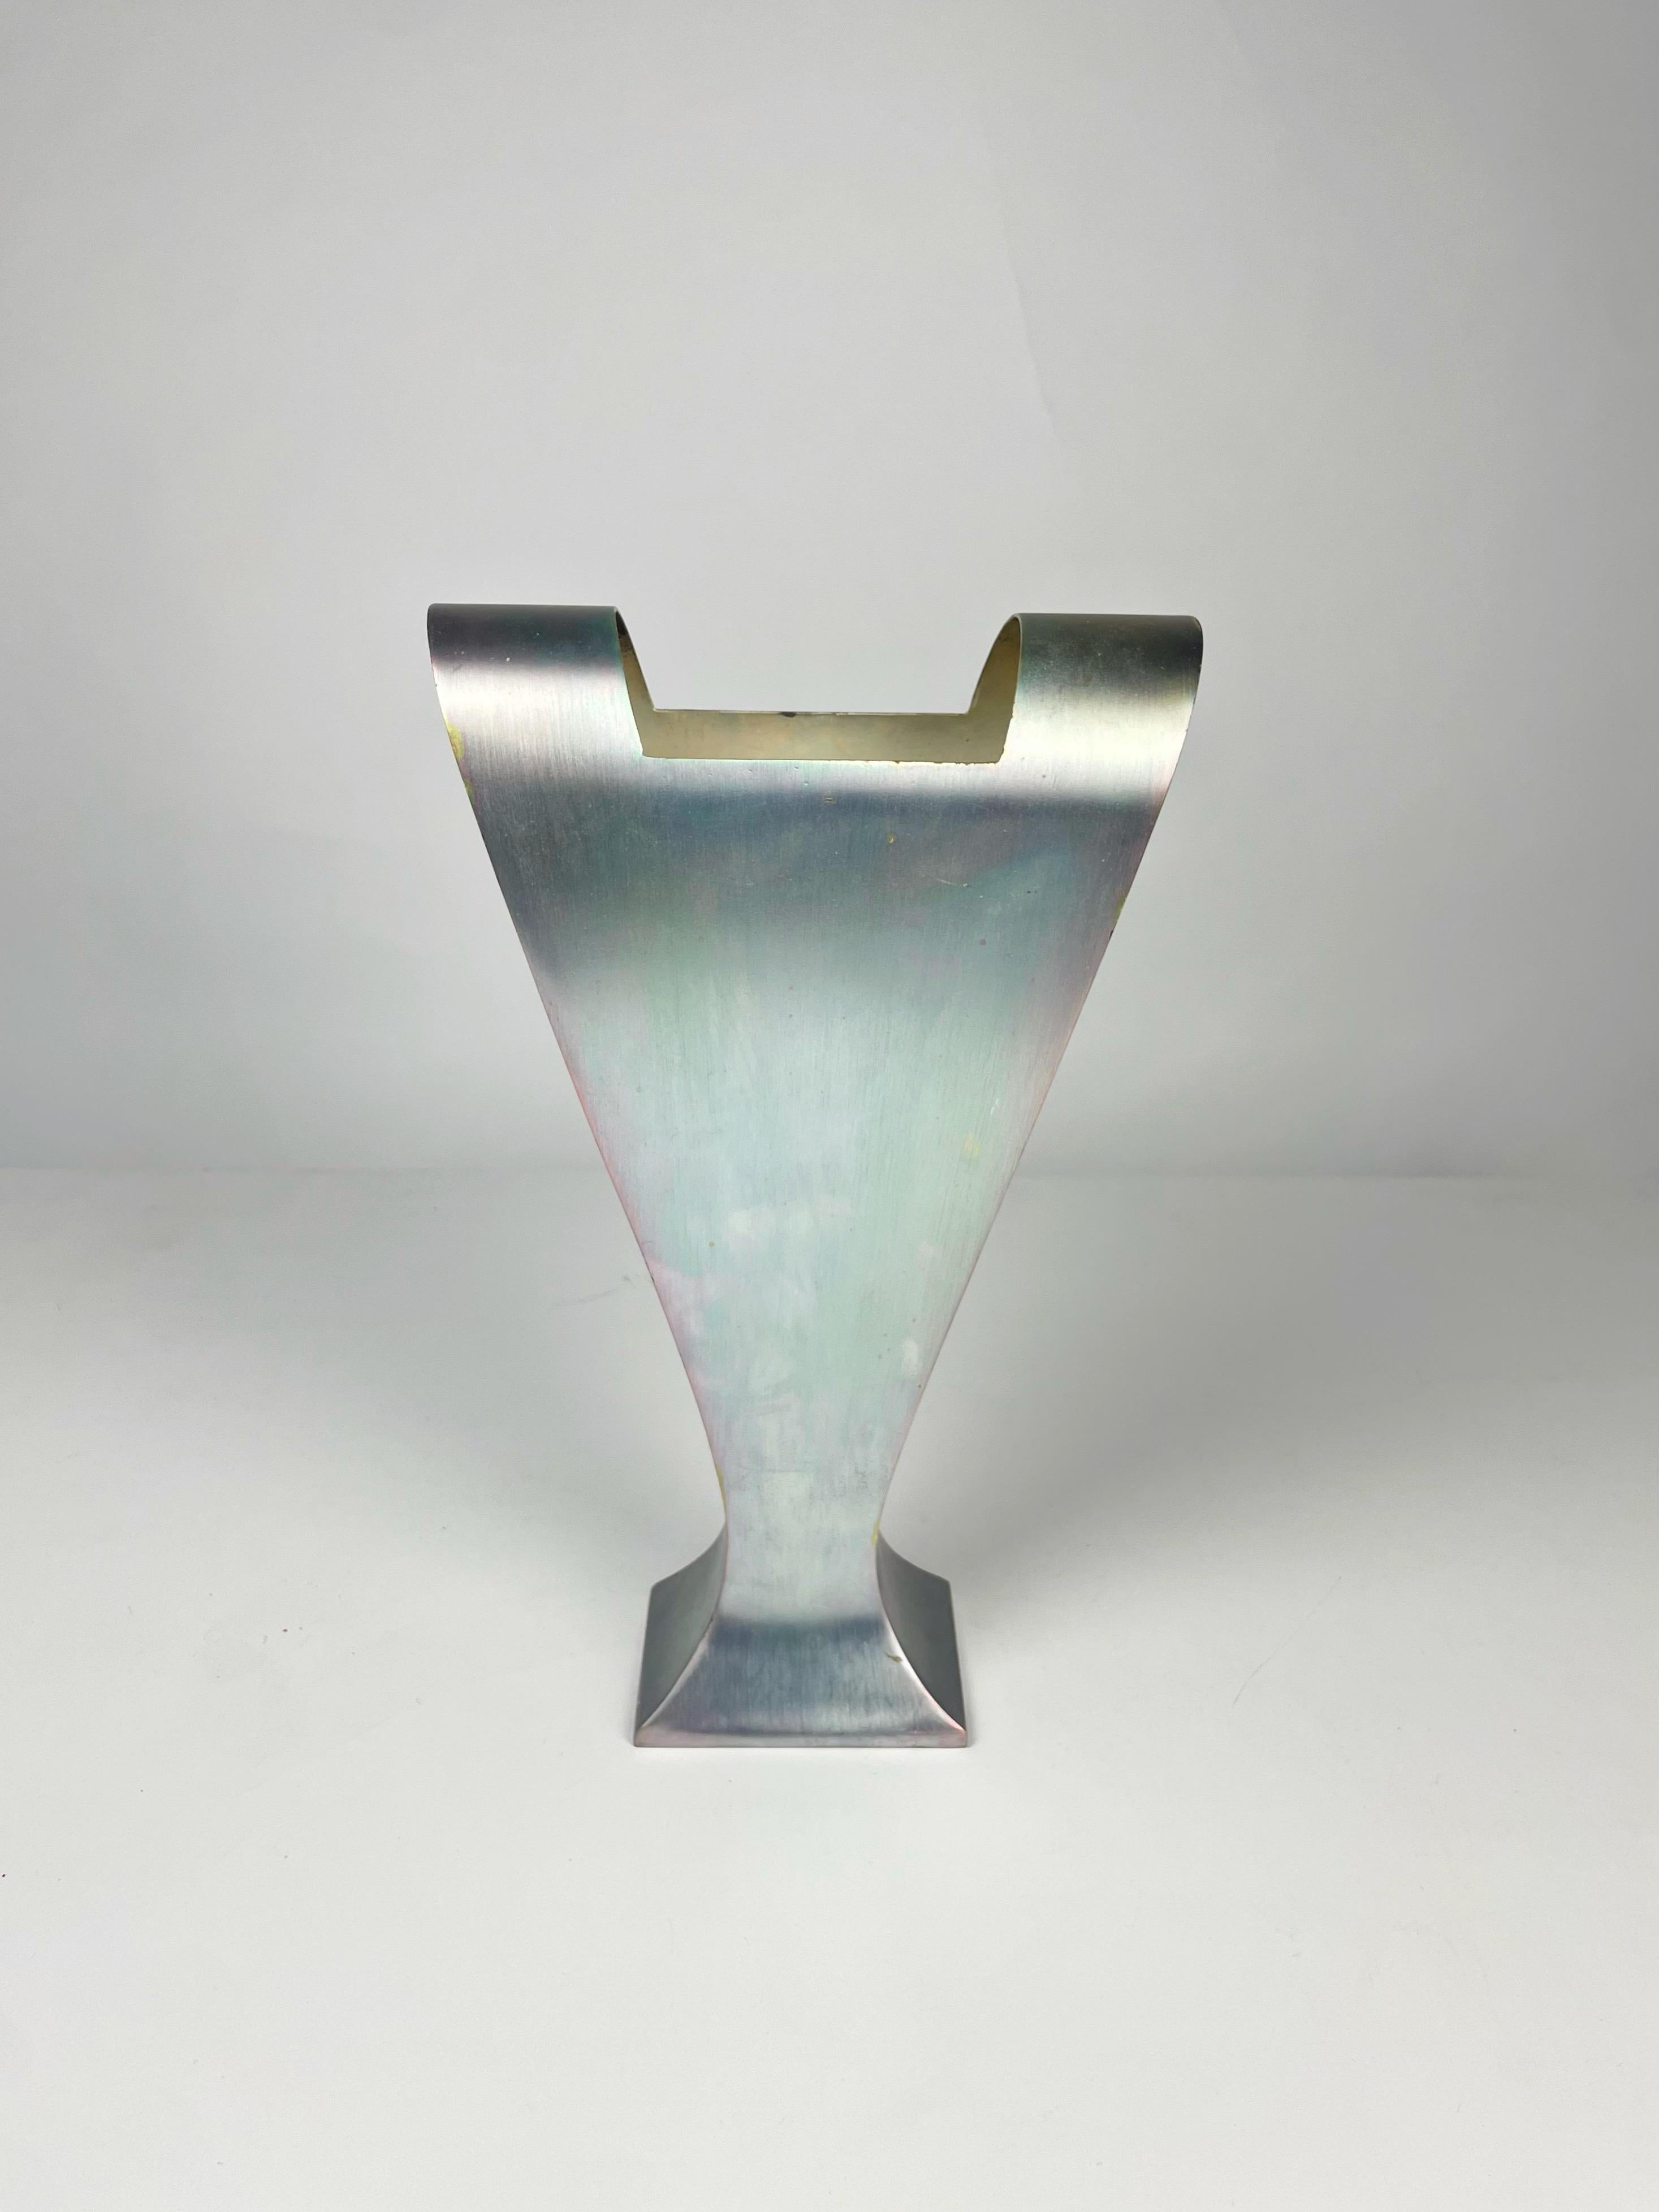 Vase entworfen von Massimo Iosa Ghini für die Design Gallery Milano um 1989, hergestellt von Argenteria Merano in Italien aus versilbertem Alpaka. Modell vermutlich aus einer Vorserie, später in limitierter Kleinserie für die Design Galerie Milano